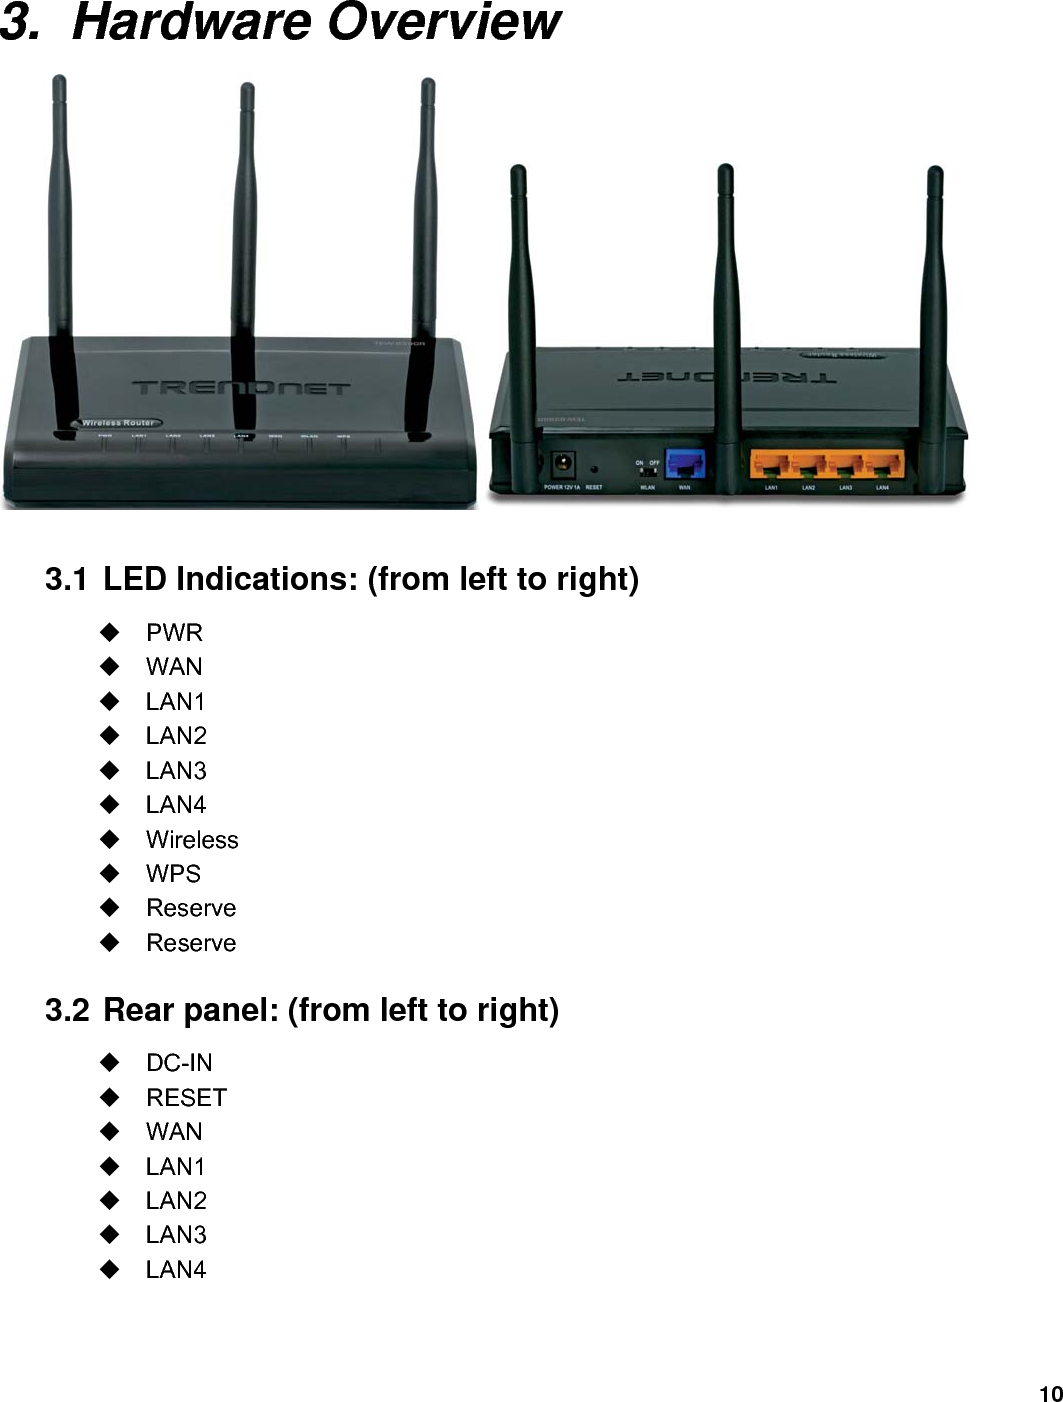 10  3. Hardware Overview   3.1 LED Indications: (from left to right)  PWR  WAN  LAN1  LAN2  LAN3  LAN4  Wireless  WPS  Reserve  Reserve 3.2 Rear panel: (from left to right)  DC-IN  RESET  WAN  LAN1  LAN2  LAN3  LAN4  